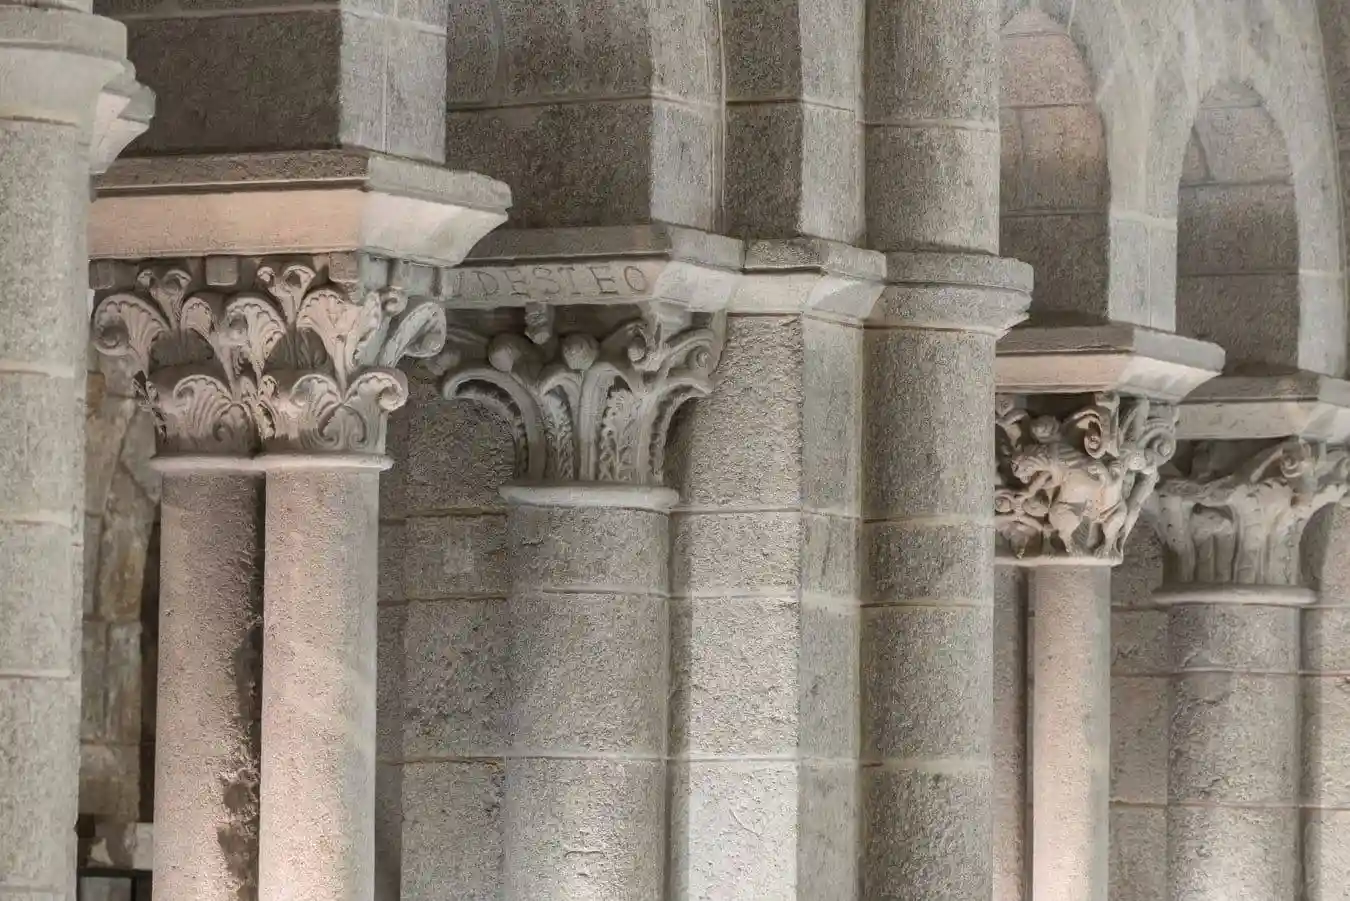 El cimacio con la inscripción Gudesteo marca el inicio de la última etapa de construcción de la catedral